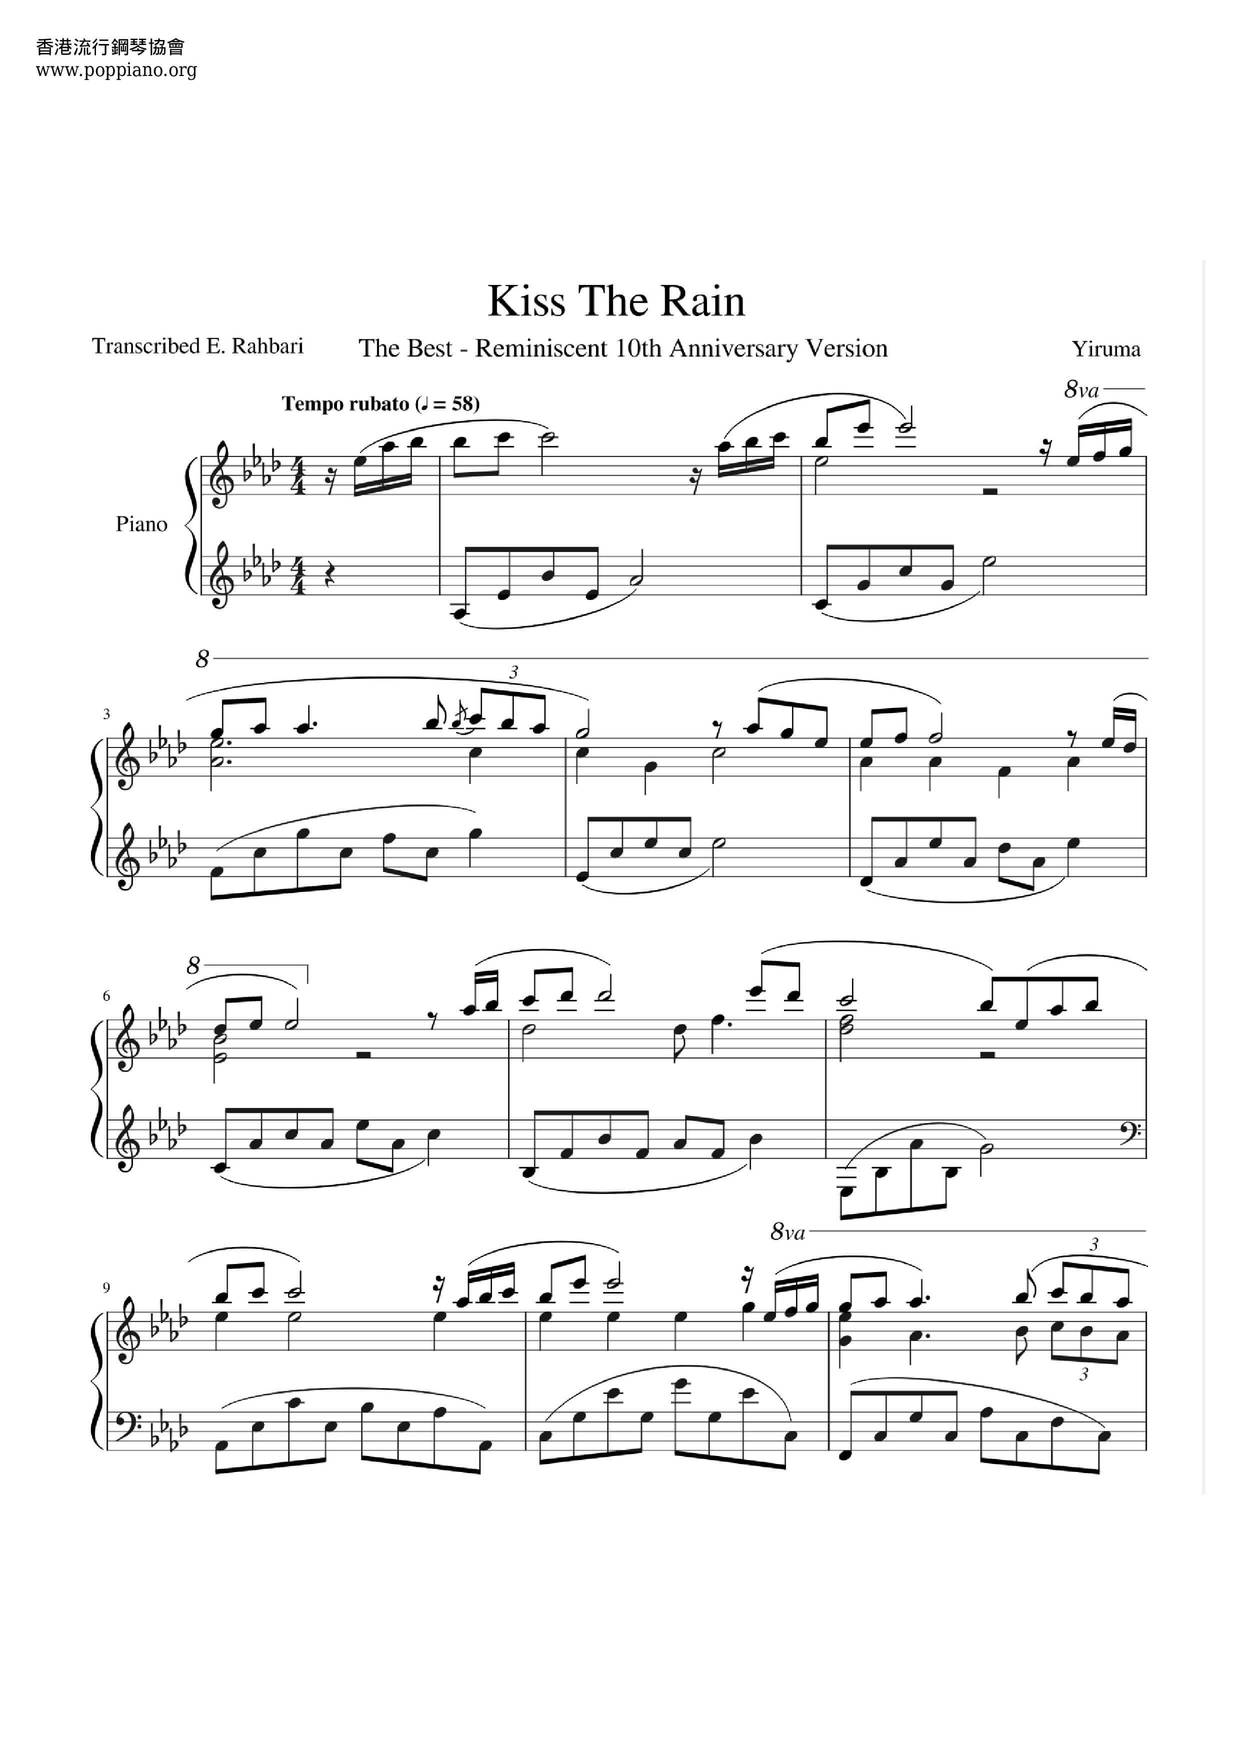 Kiss The Rain Score